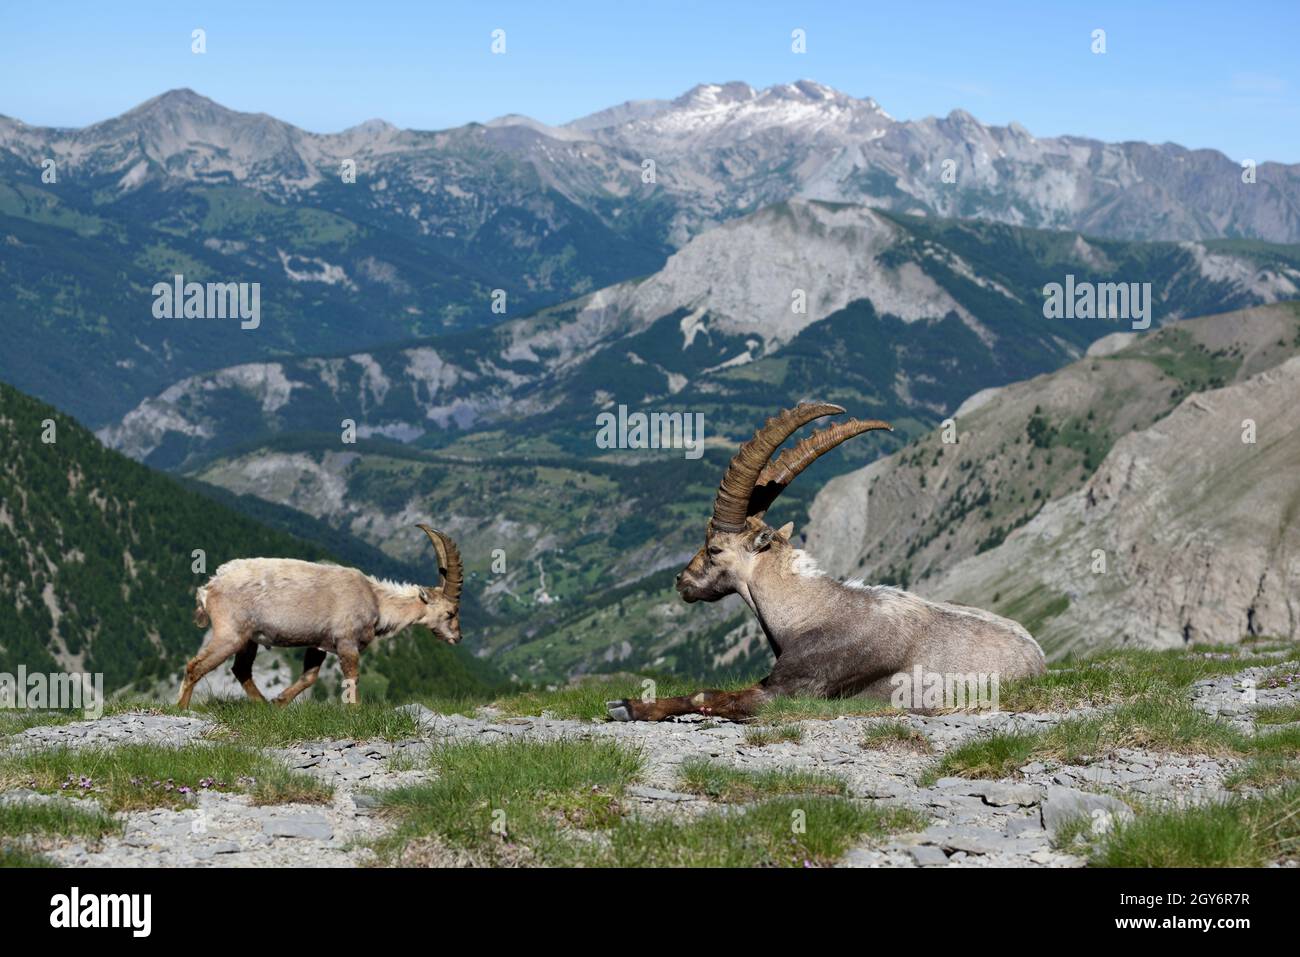 Ibex mâle mature et jeune Ibex femelle ou ibex, Capra ibex, en paysage avec les Alpes françaises dans le Parc National du Mercantour France Banque D'Images